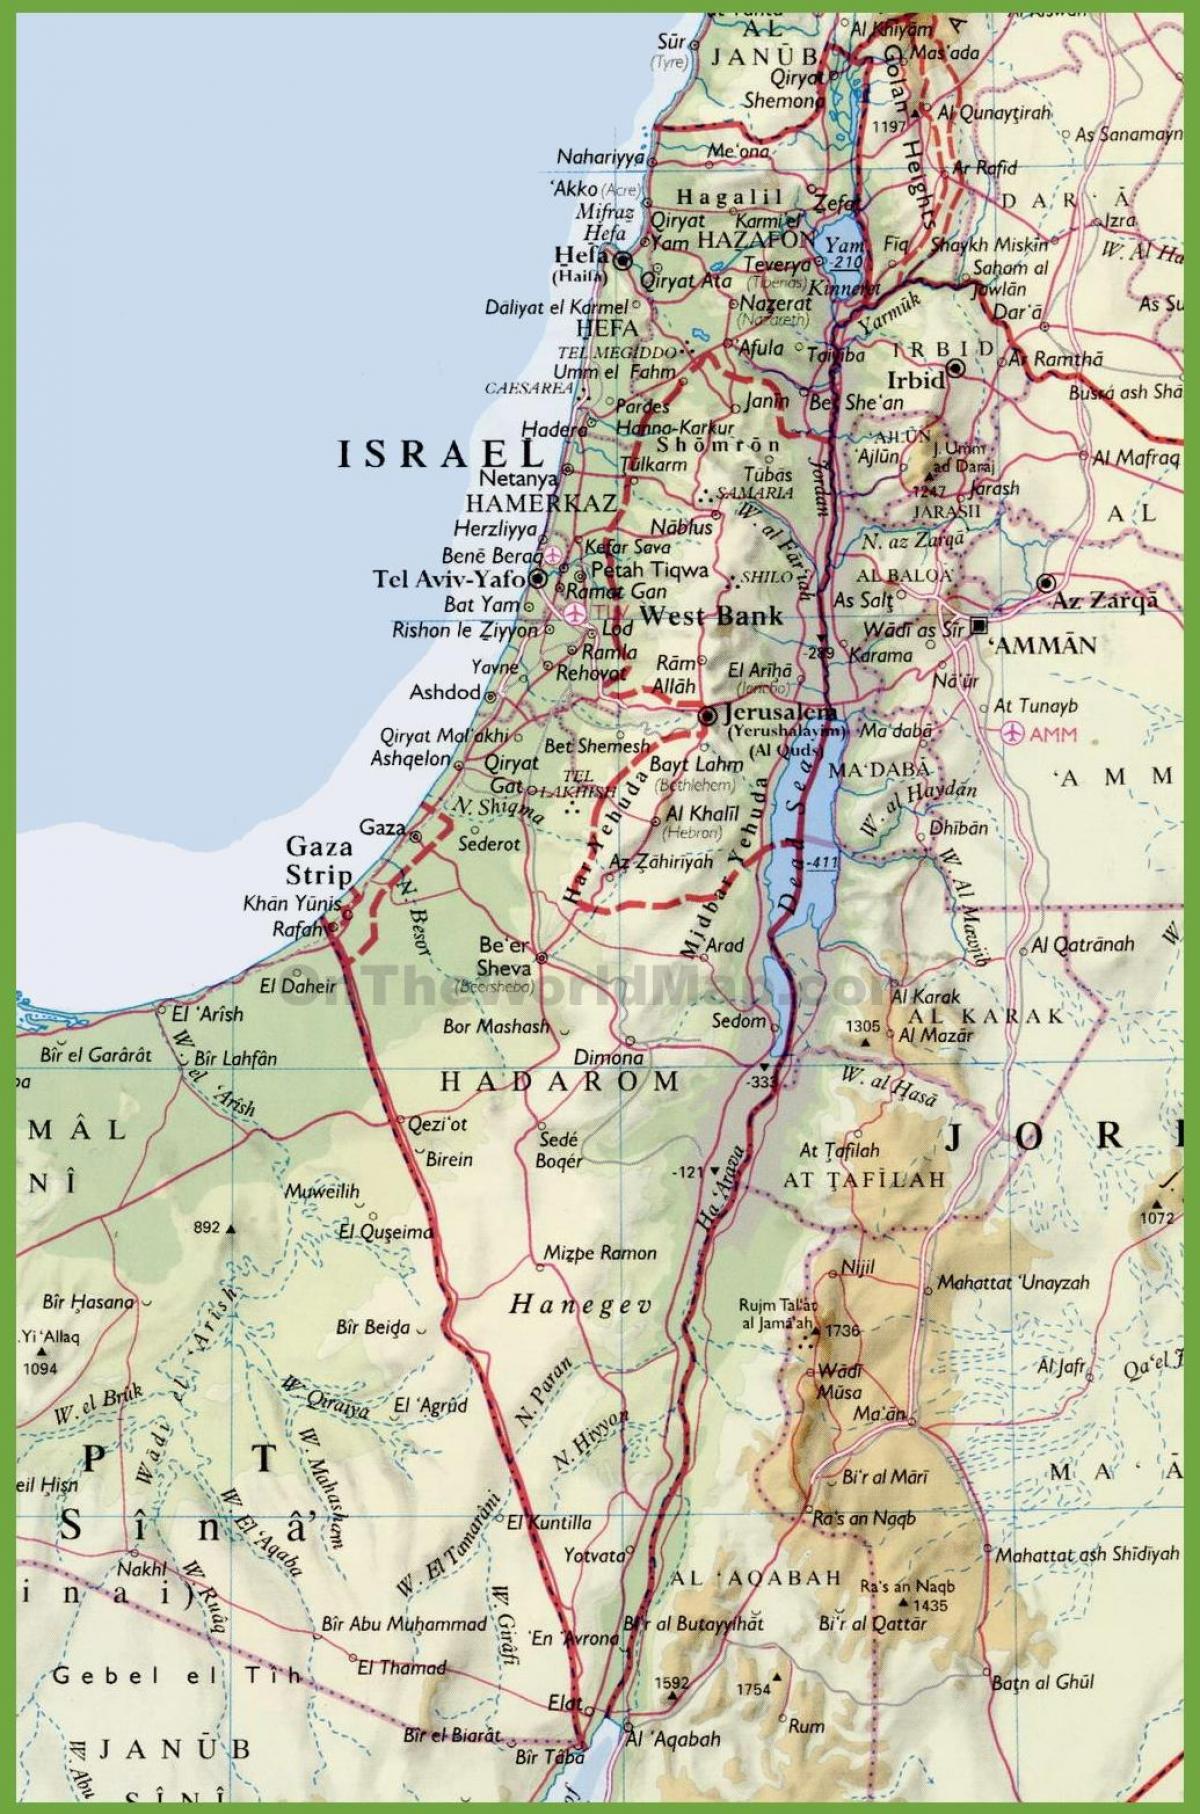 ისრაელის ქალაქების რუკა